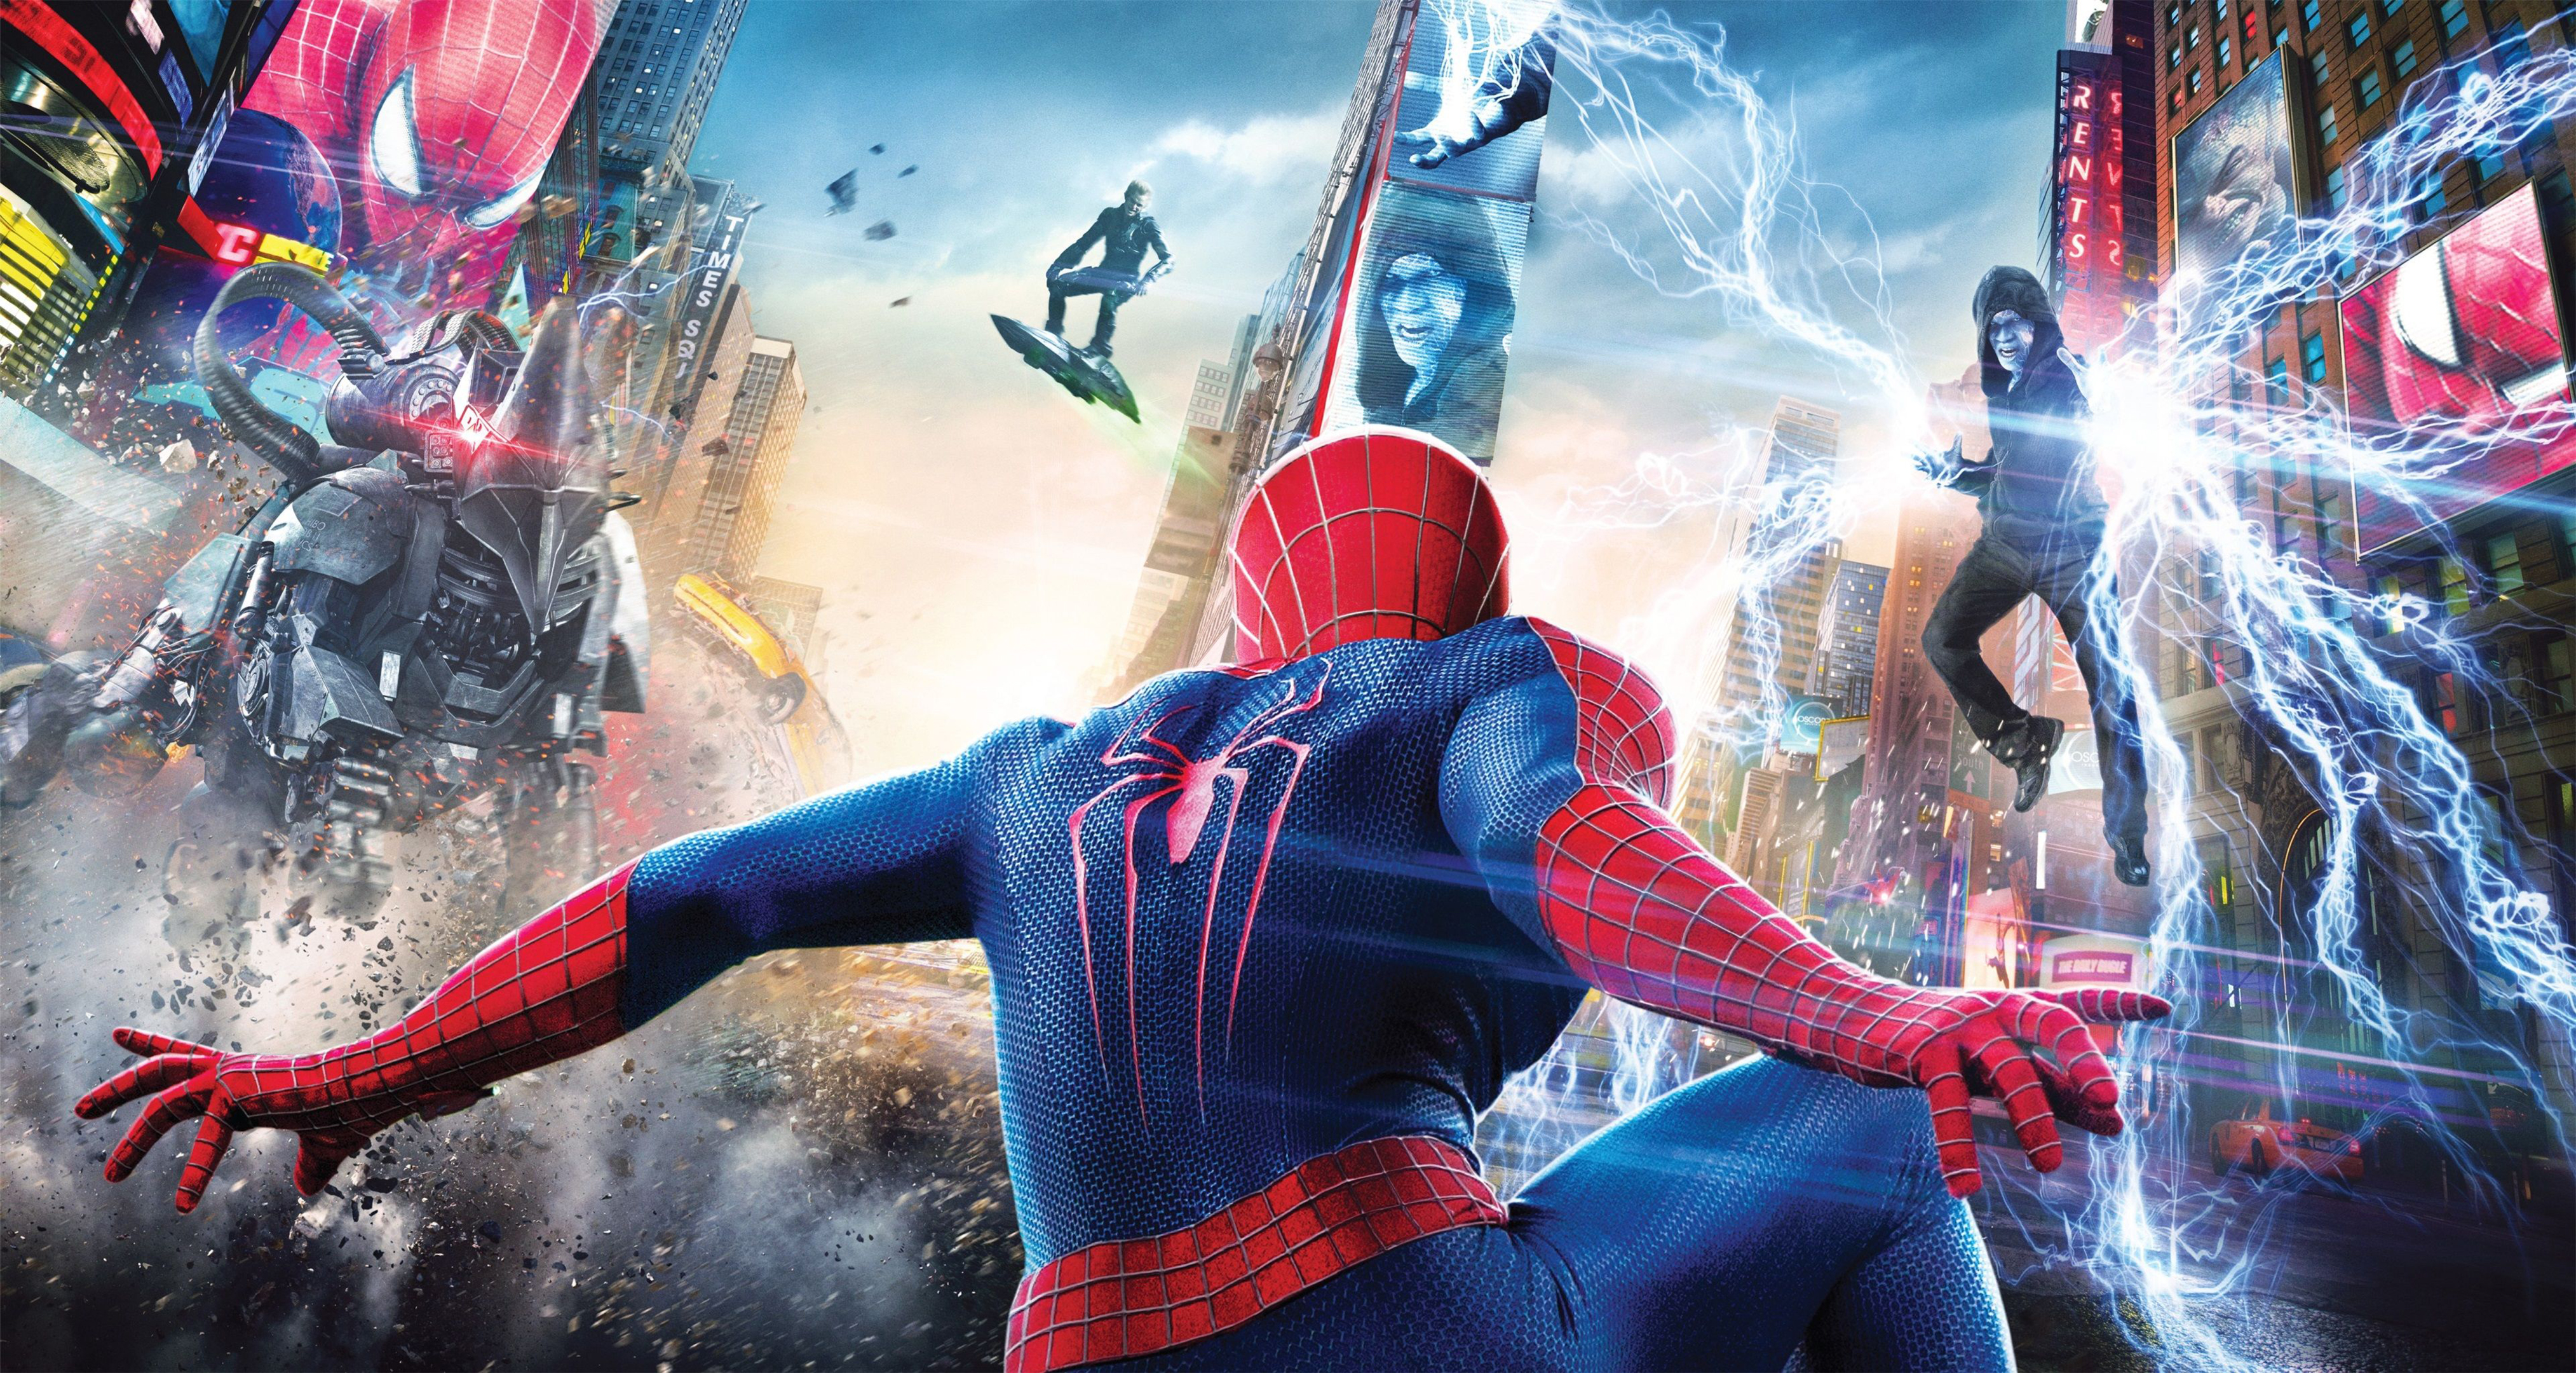 Cùng trang trí cho máy tính và điện thoại của mình một chiếc hình nền Người Nhện - Spider Man đầy ngầu và sành điệu! Những hình ảnh này không chỉ sắc sảo và độc đáo, mà còn phản ánh được tính cách dũng cảm, nghị lực và bất khuất của một siêu anh hùng. Hãy xem ngay để tận hưởng những điều thú vị mà Người Nhện mang lại!